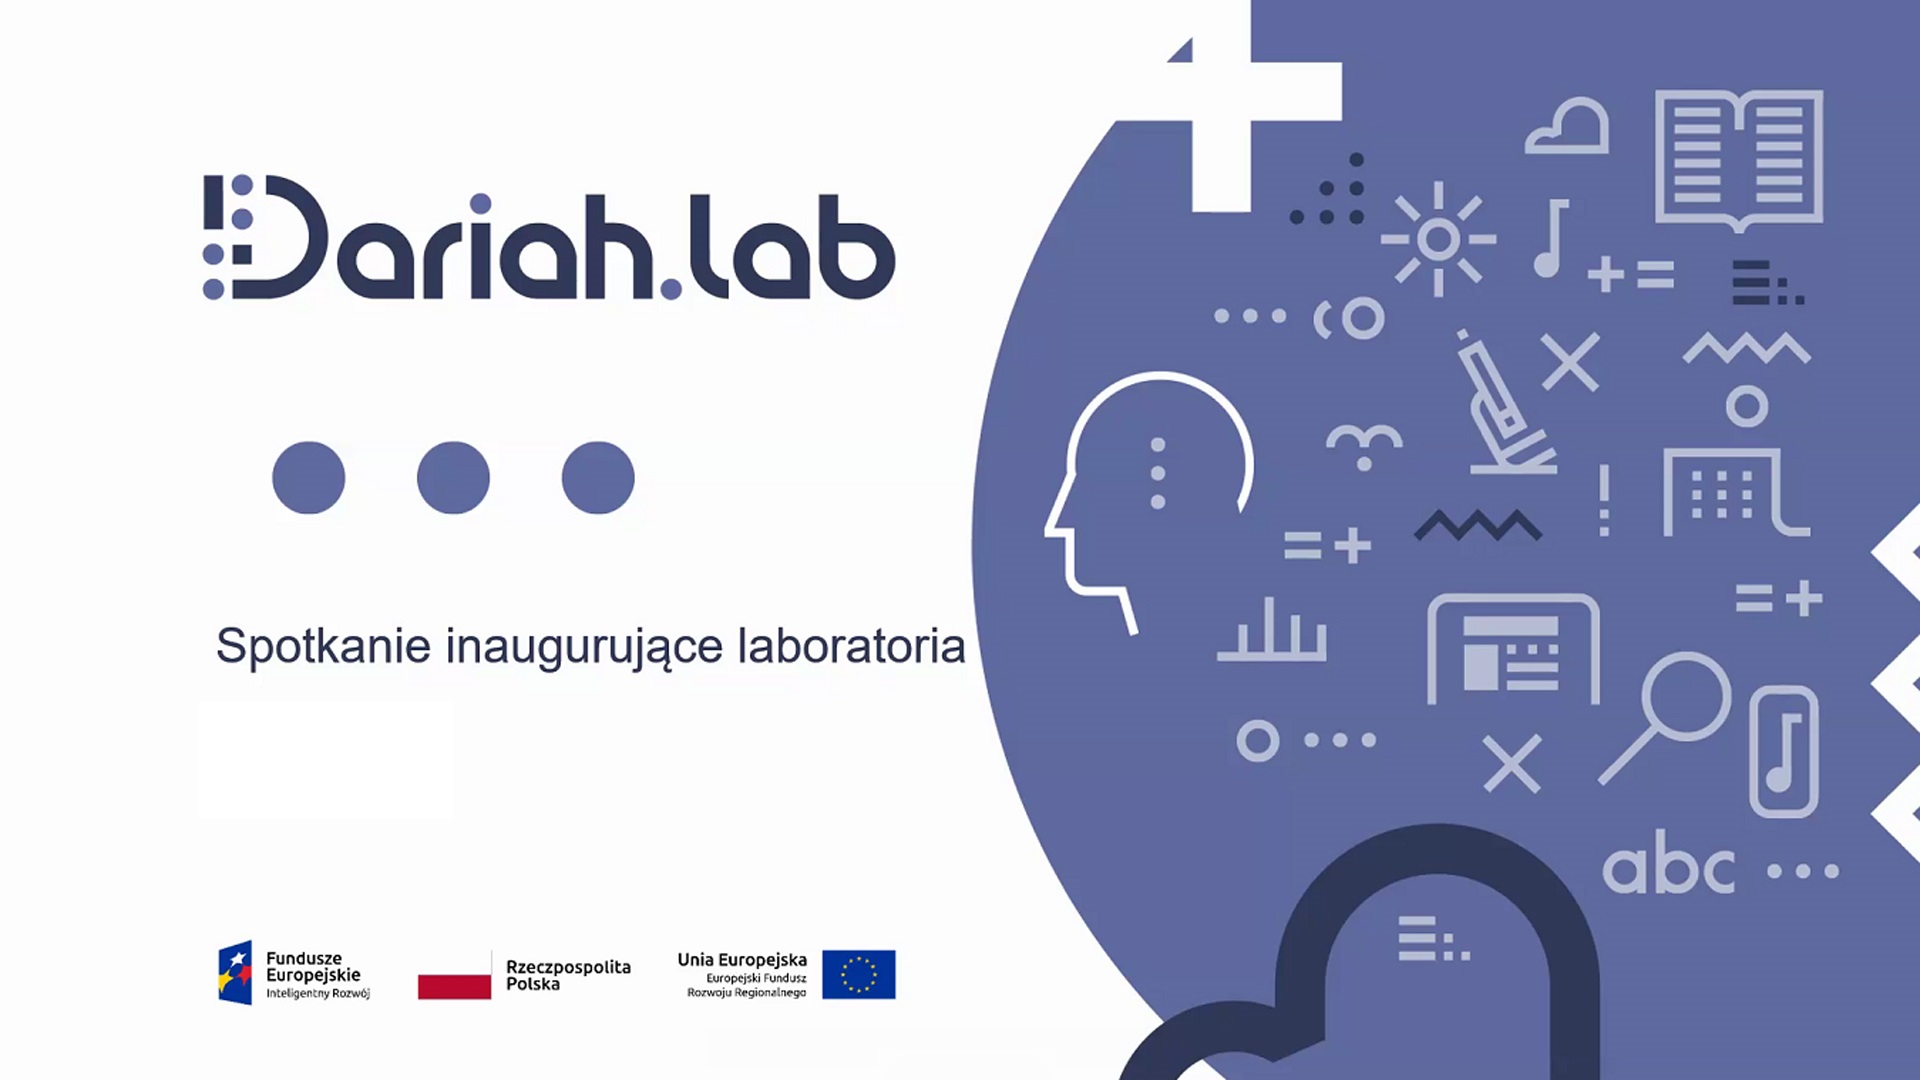 DARIAH.LAB: Spotkanie inaugurujące laboratoria